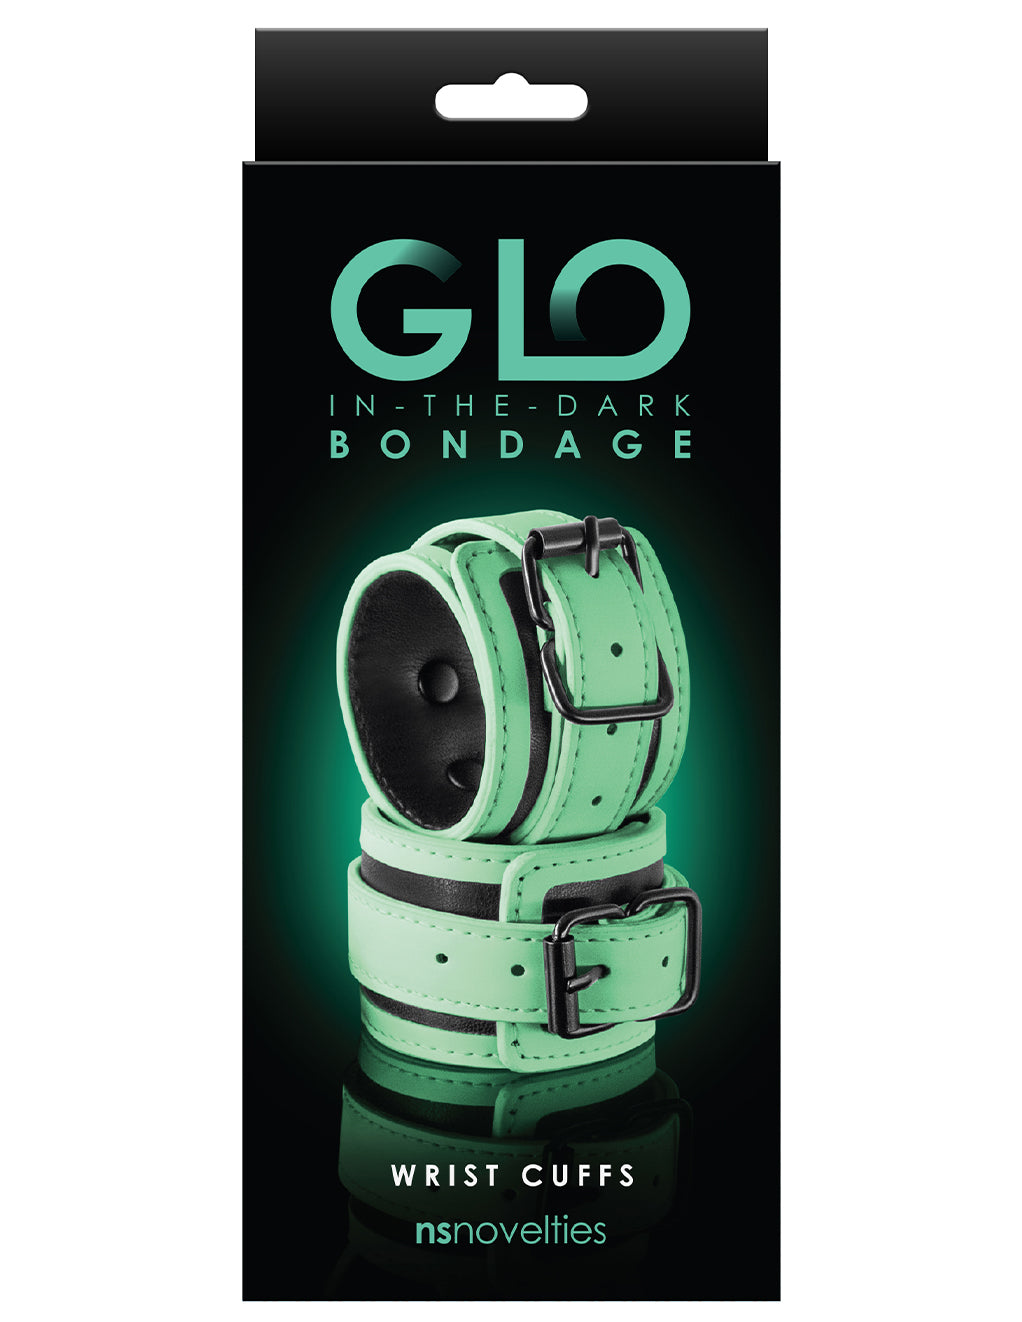 GLO Bondage Wrist Cuffs- Box